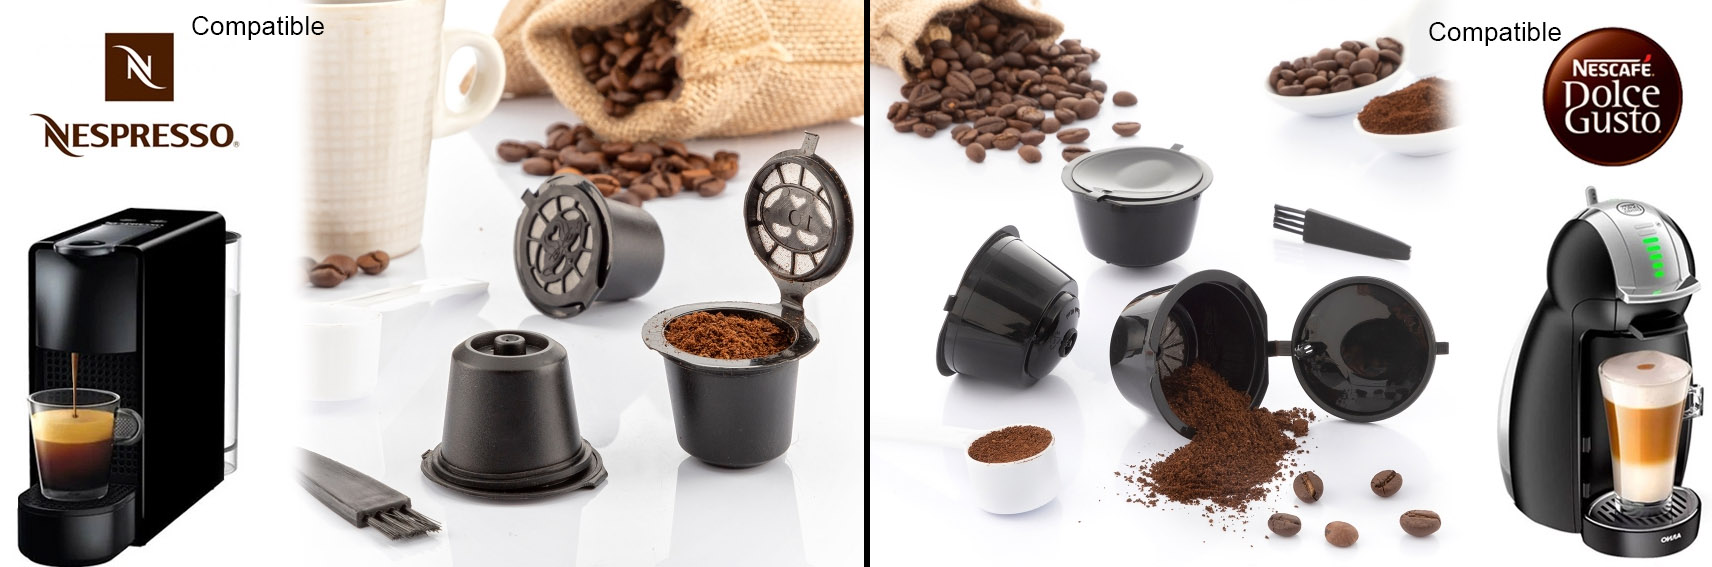 Capsule café réutilisable (PP) , Dolce Gusto